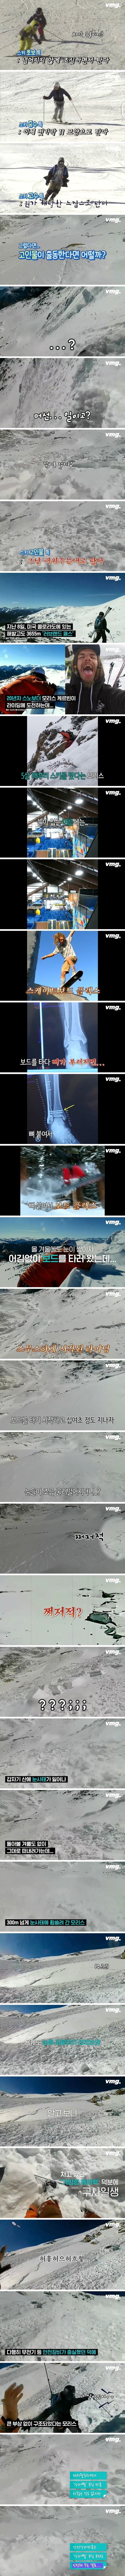 3천미터 넘는 산에서 보드 타다가 눈사태에 휩쓸린 생존자.비결은.jpg